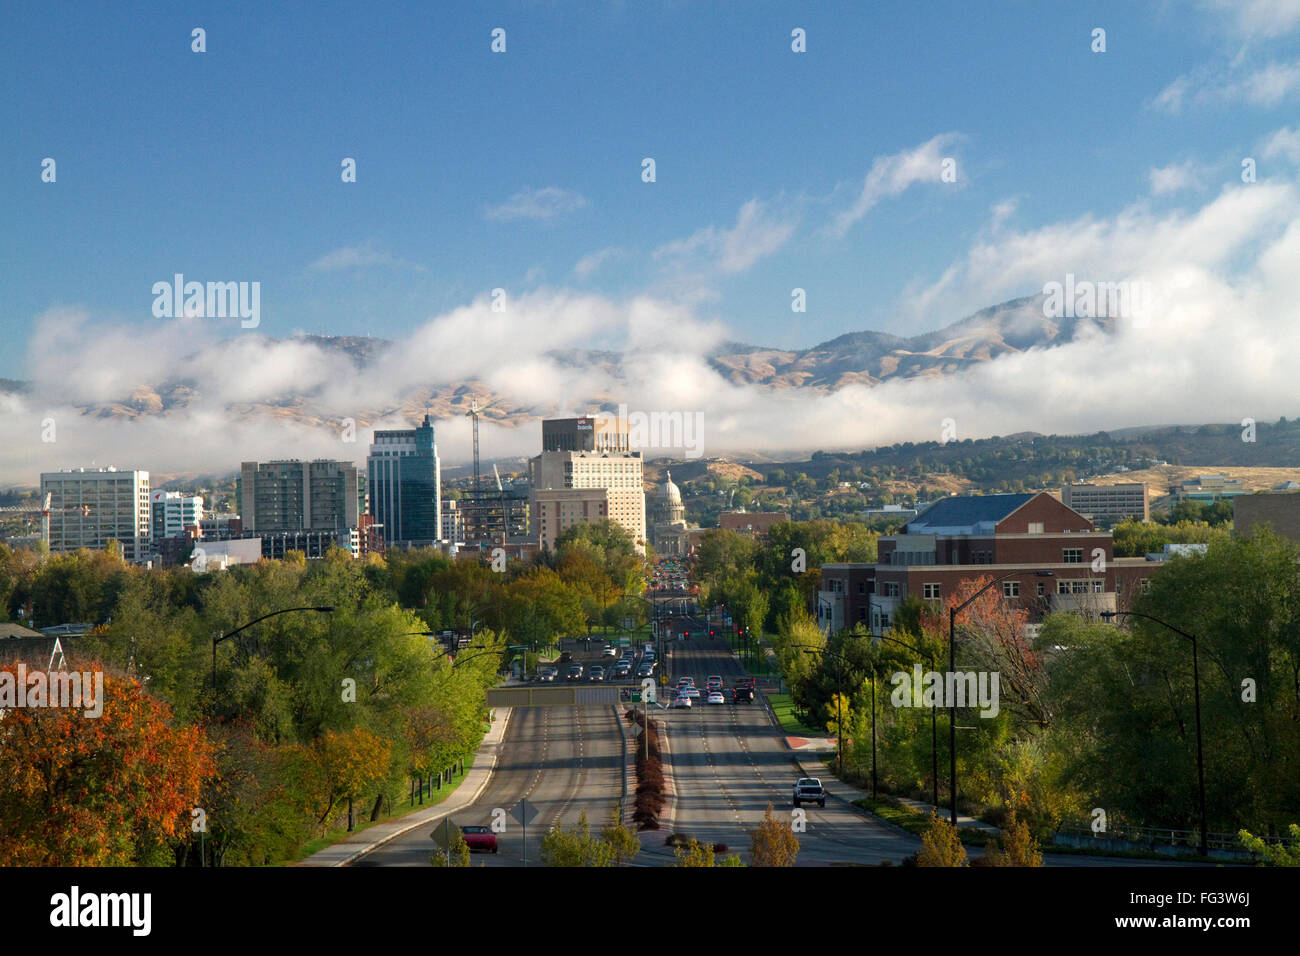 Vista del boulevard di capitale e il Campidoglio dell'Idaho in una nebbiosa mattina nel centro cittadino di Boise, Idaho, Stati Uniti d'America. Foto Stock